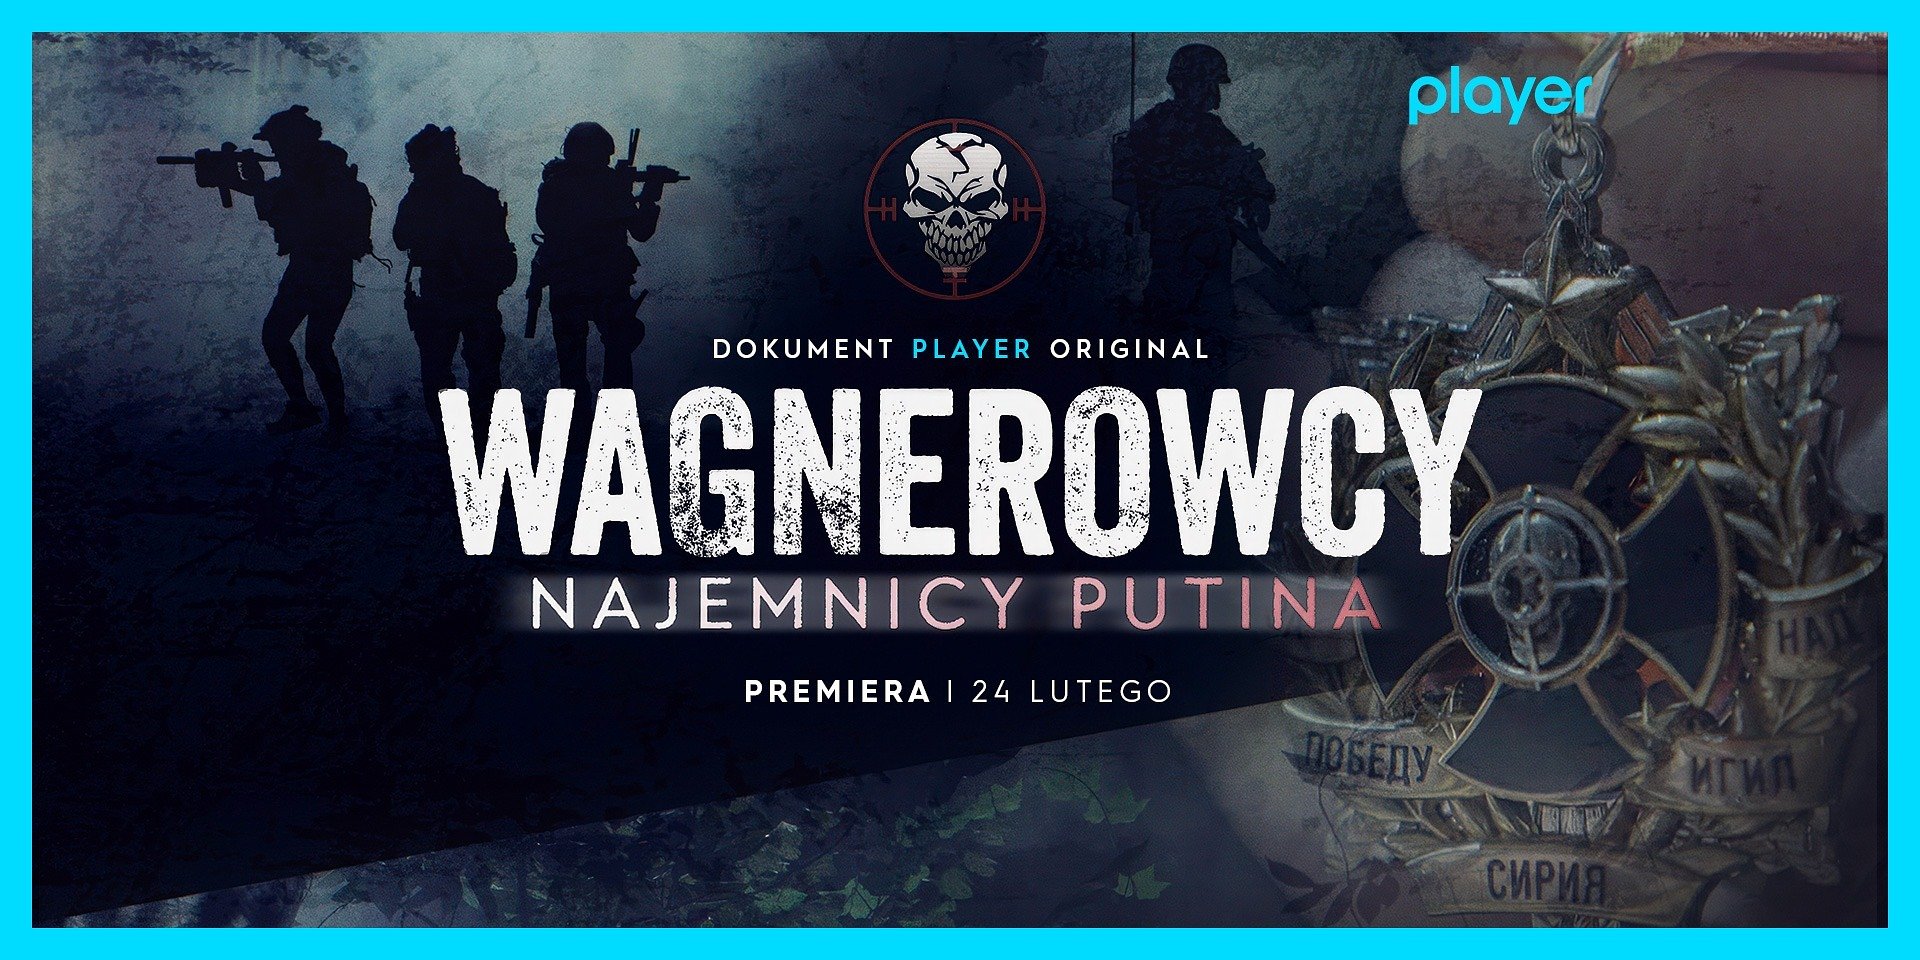 Wstrząsający dokument „Wagnerowcy. Najemnicy Putina” tylko w Player! Od kiedy można oglądać?